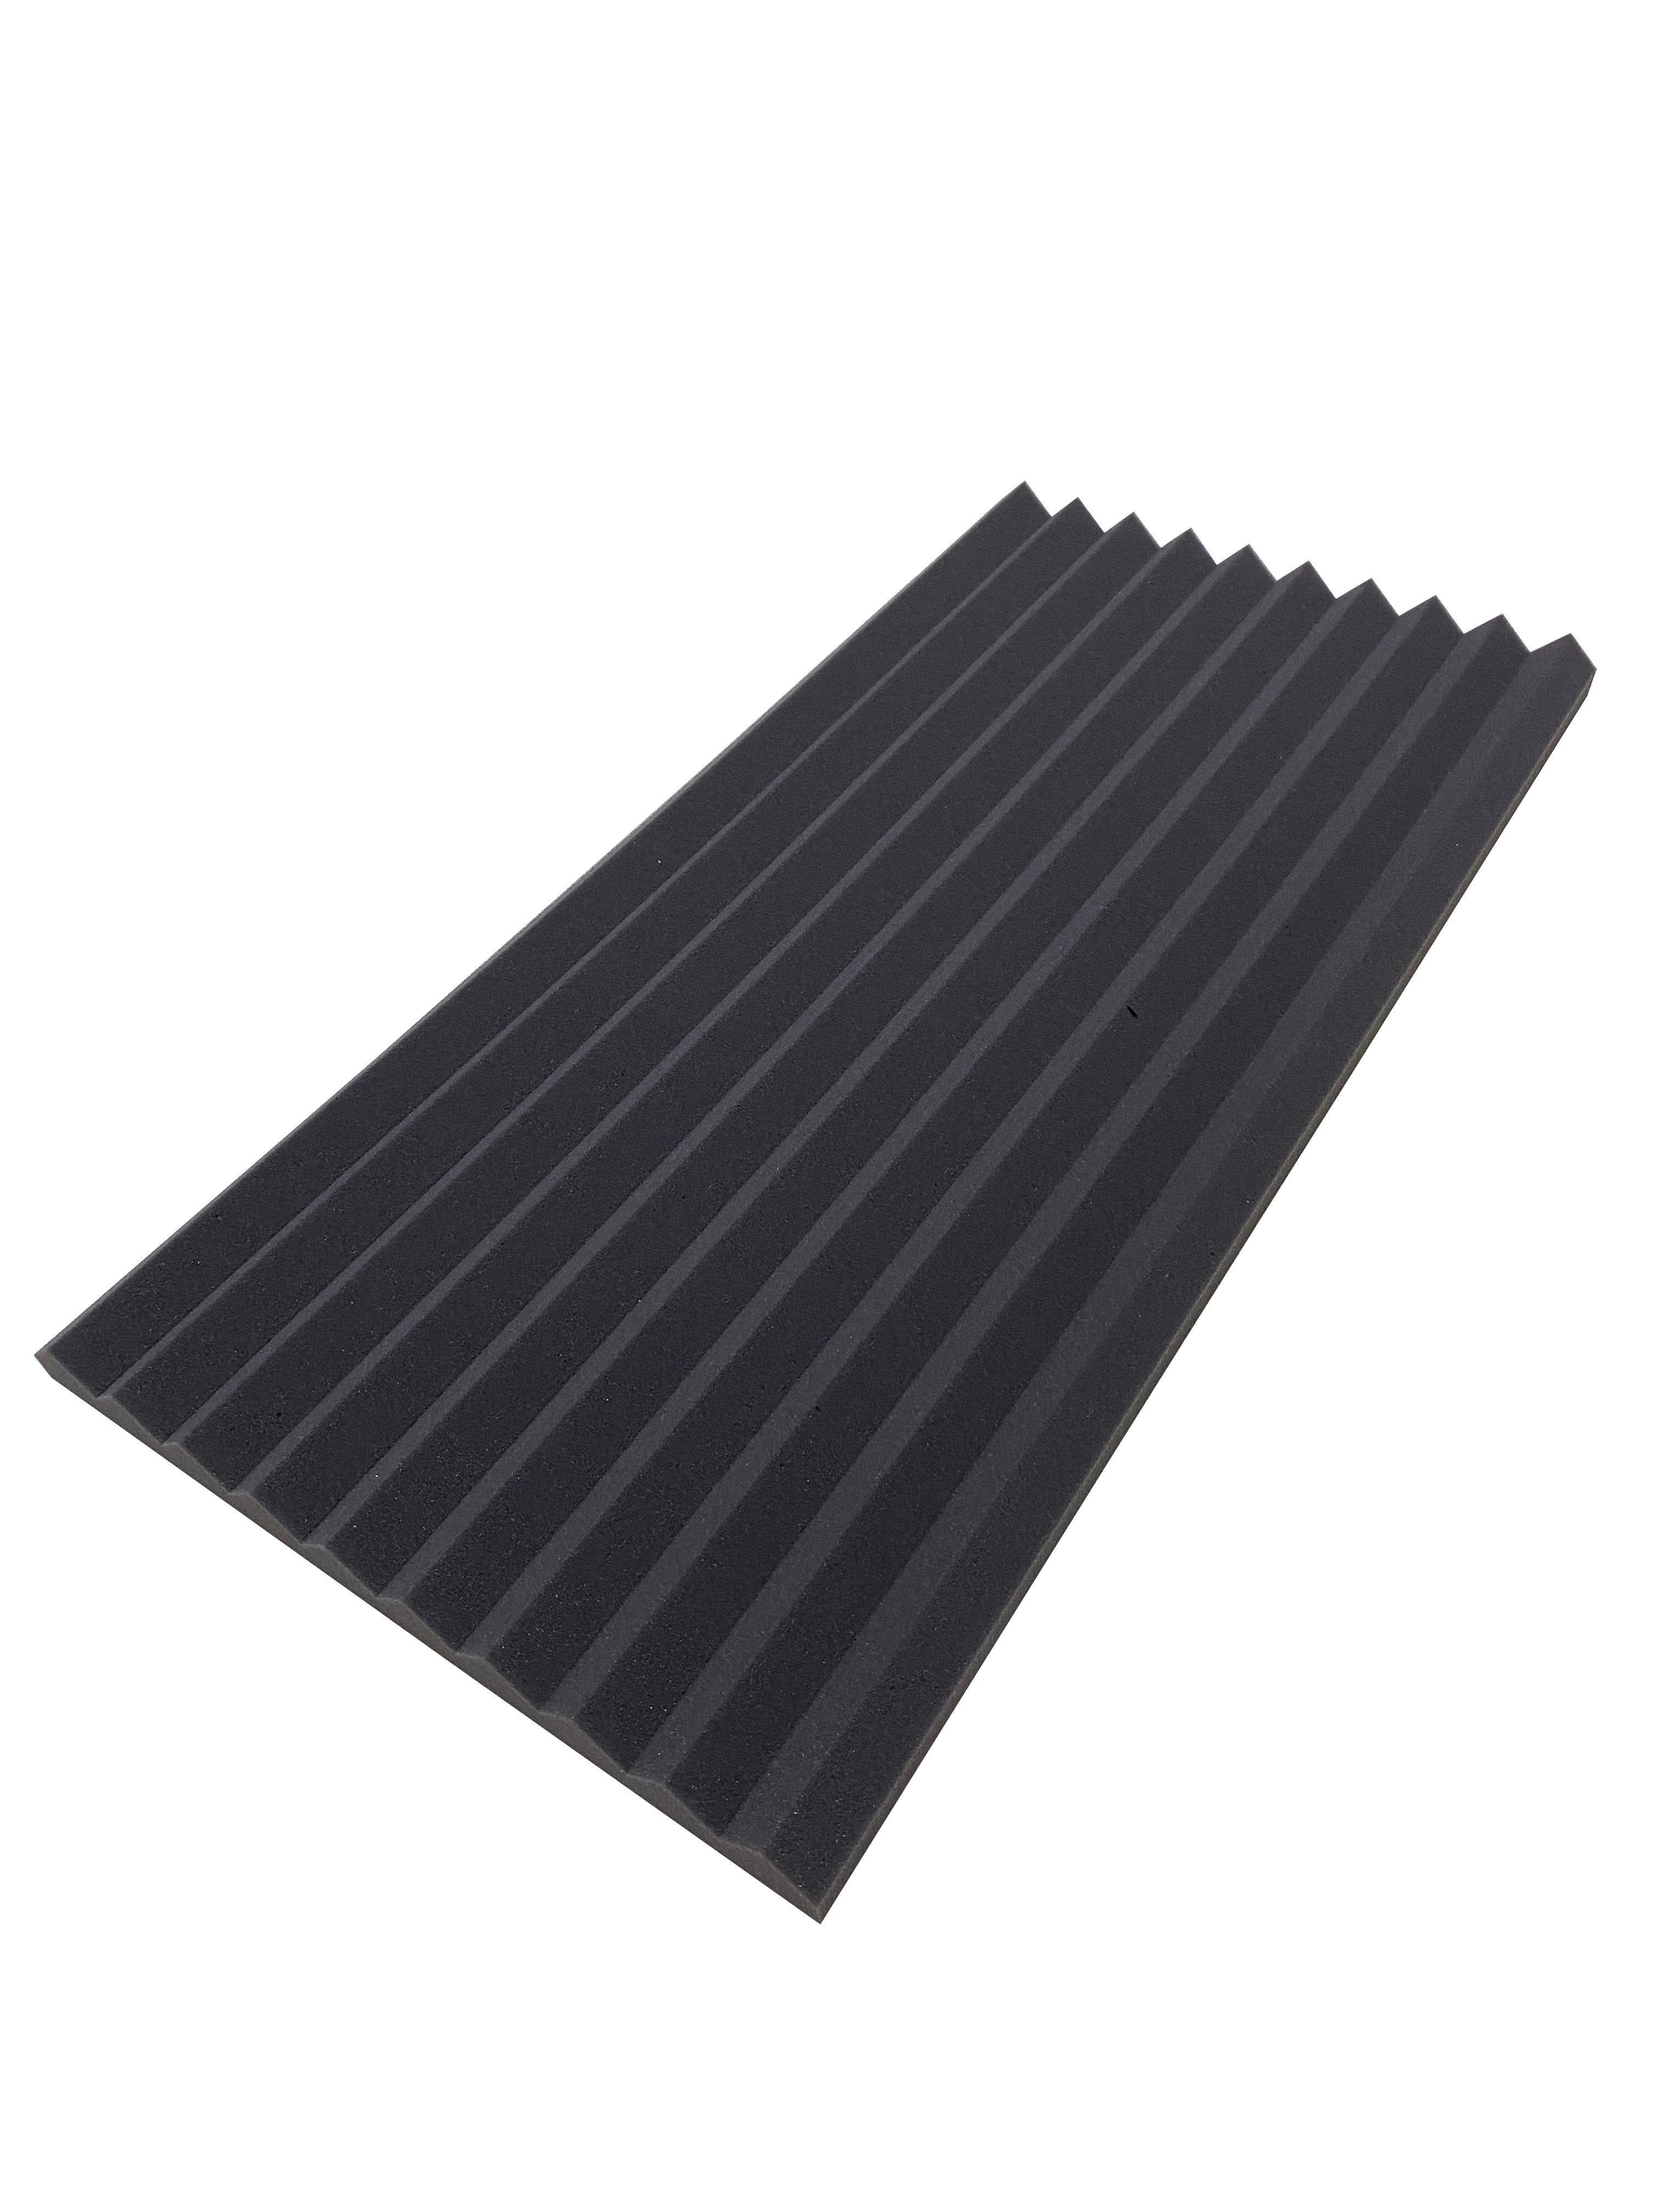 Buy dark-grey Wedge 30&quot;x15&quot; Acoustic Studio Foam Tile Kit